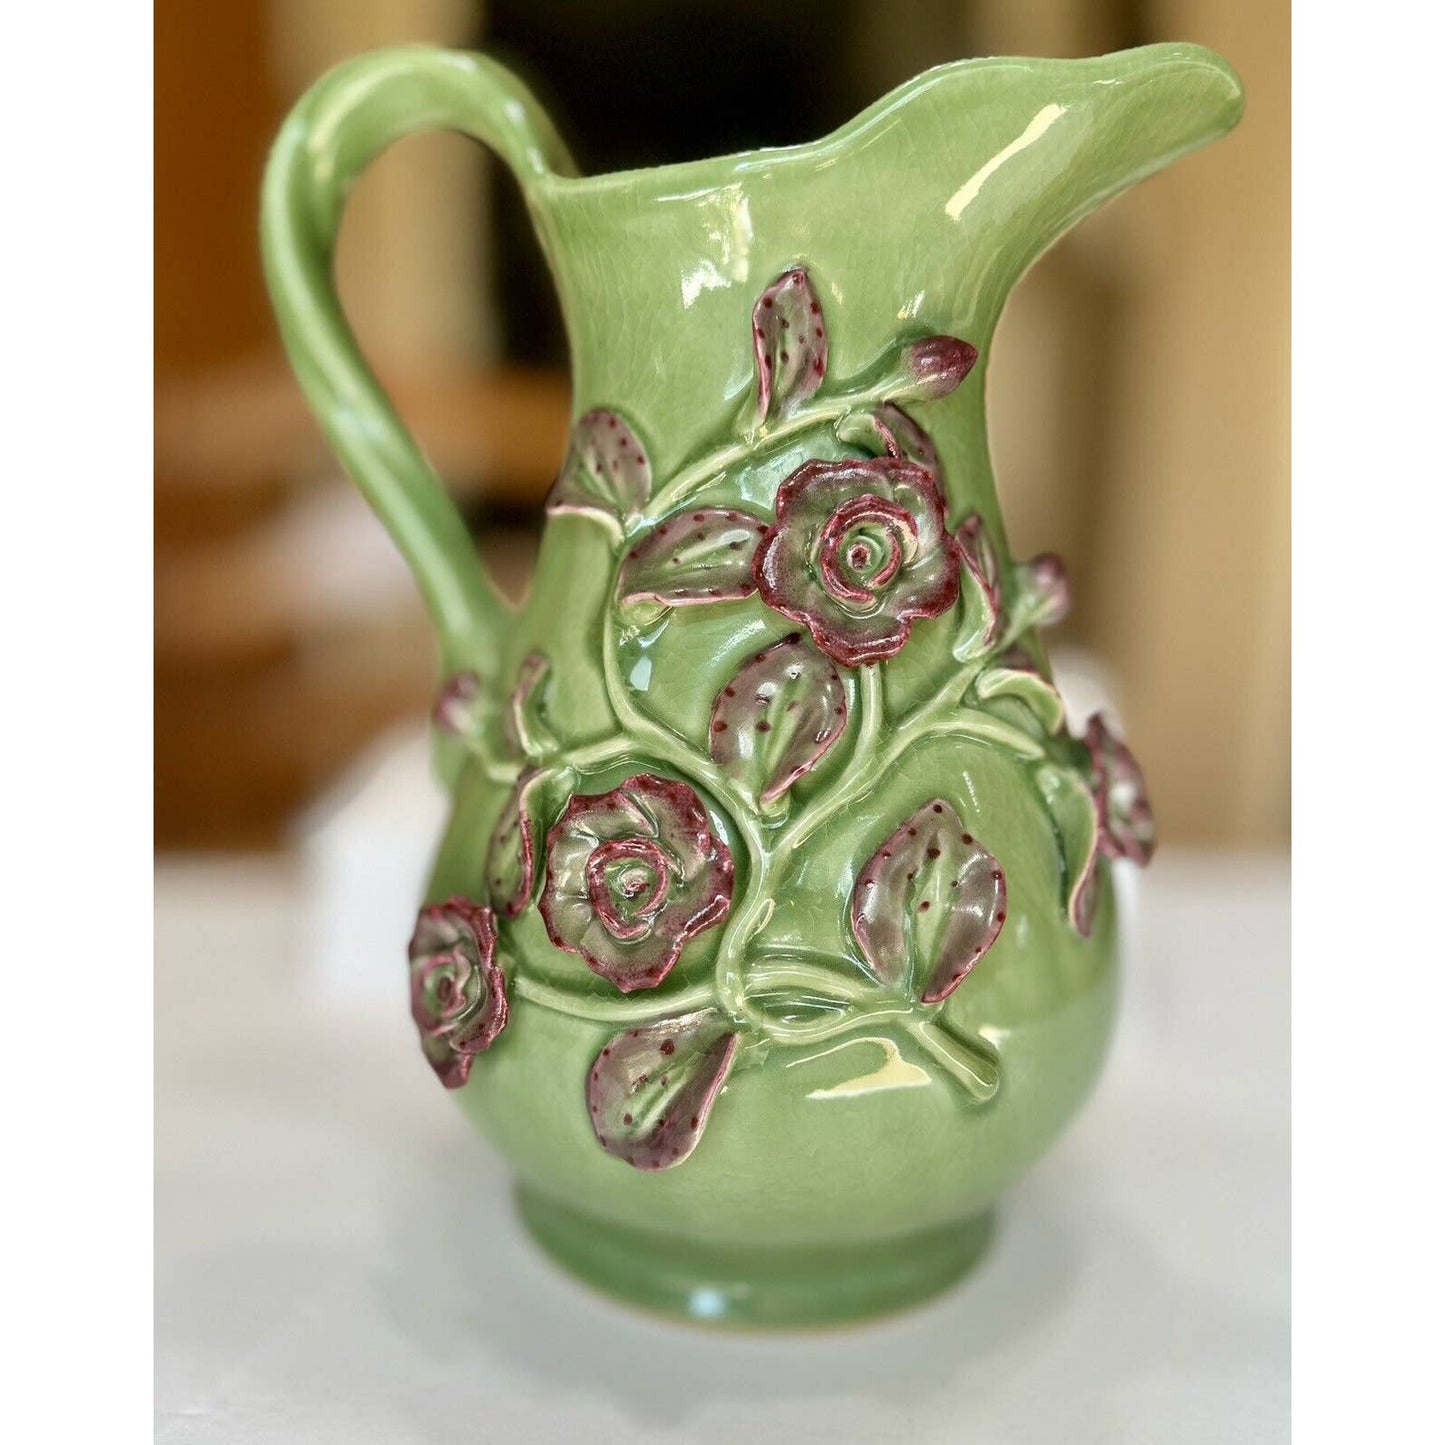 UnknownLarge Crackle Glazed Ceramic Green And Pink Floral Decorative Pitcher - Black Dog Vintage